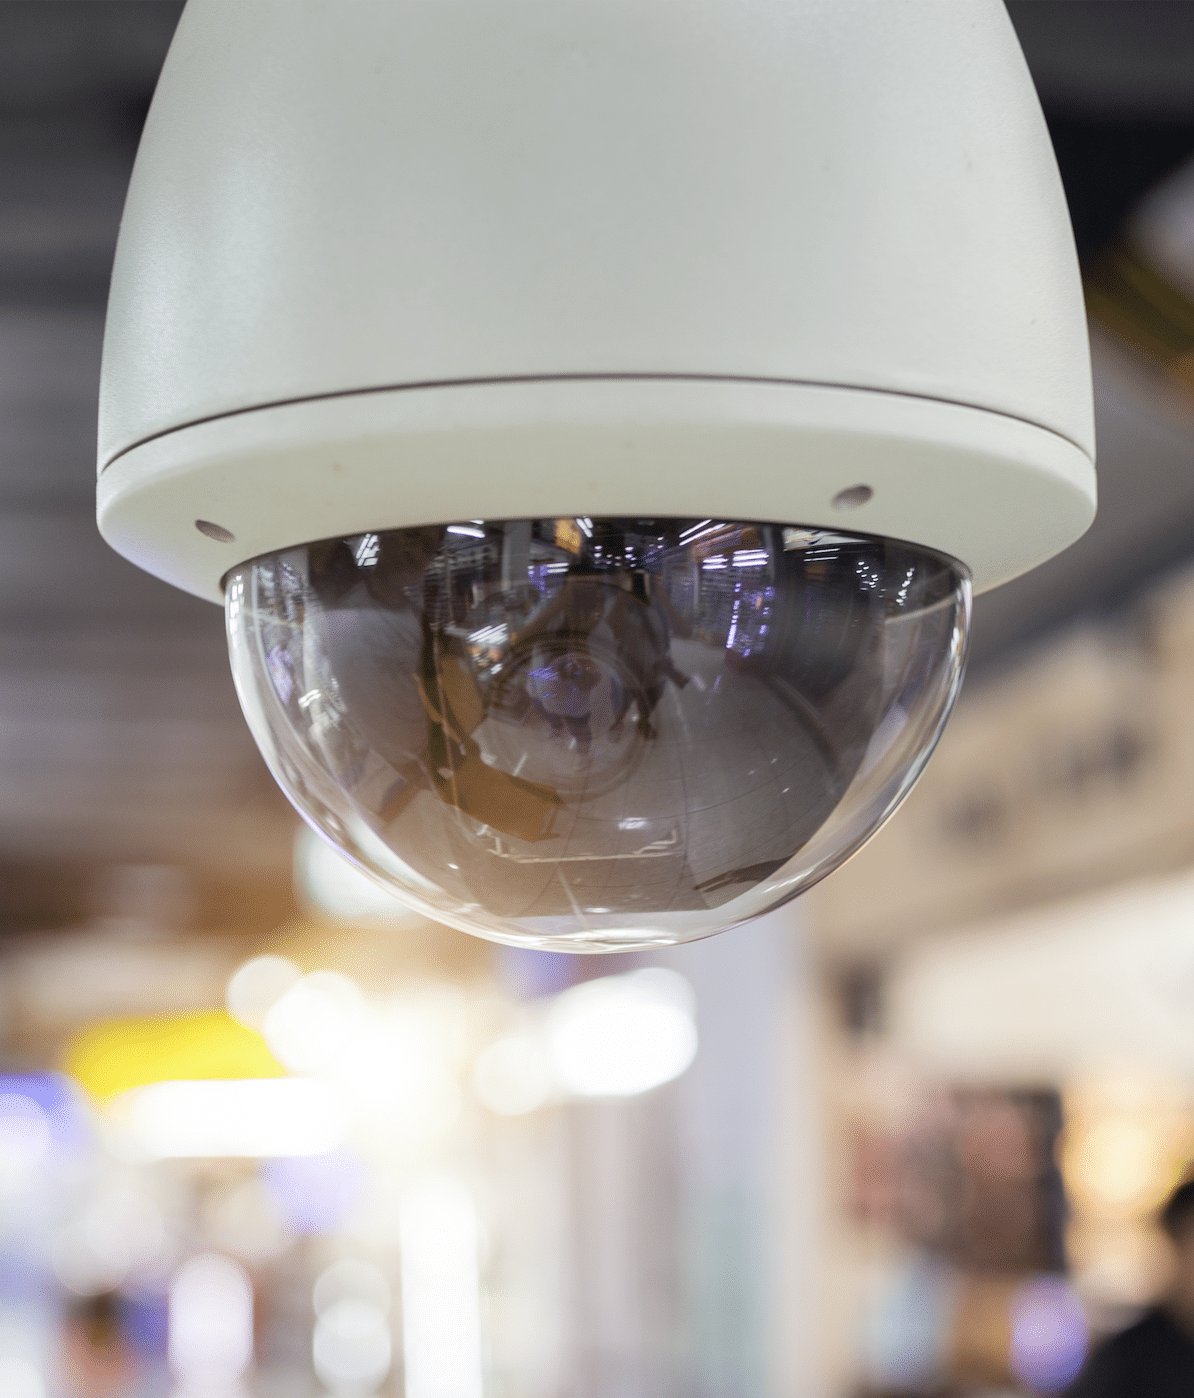 Video Surveillance Systems In Austin